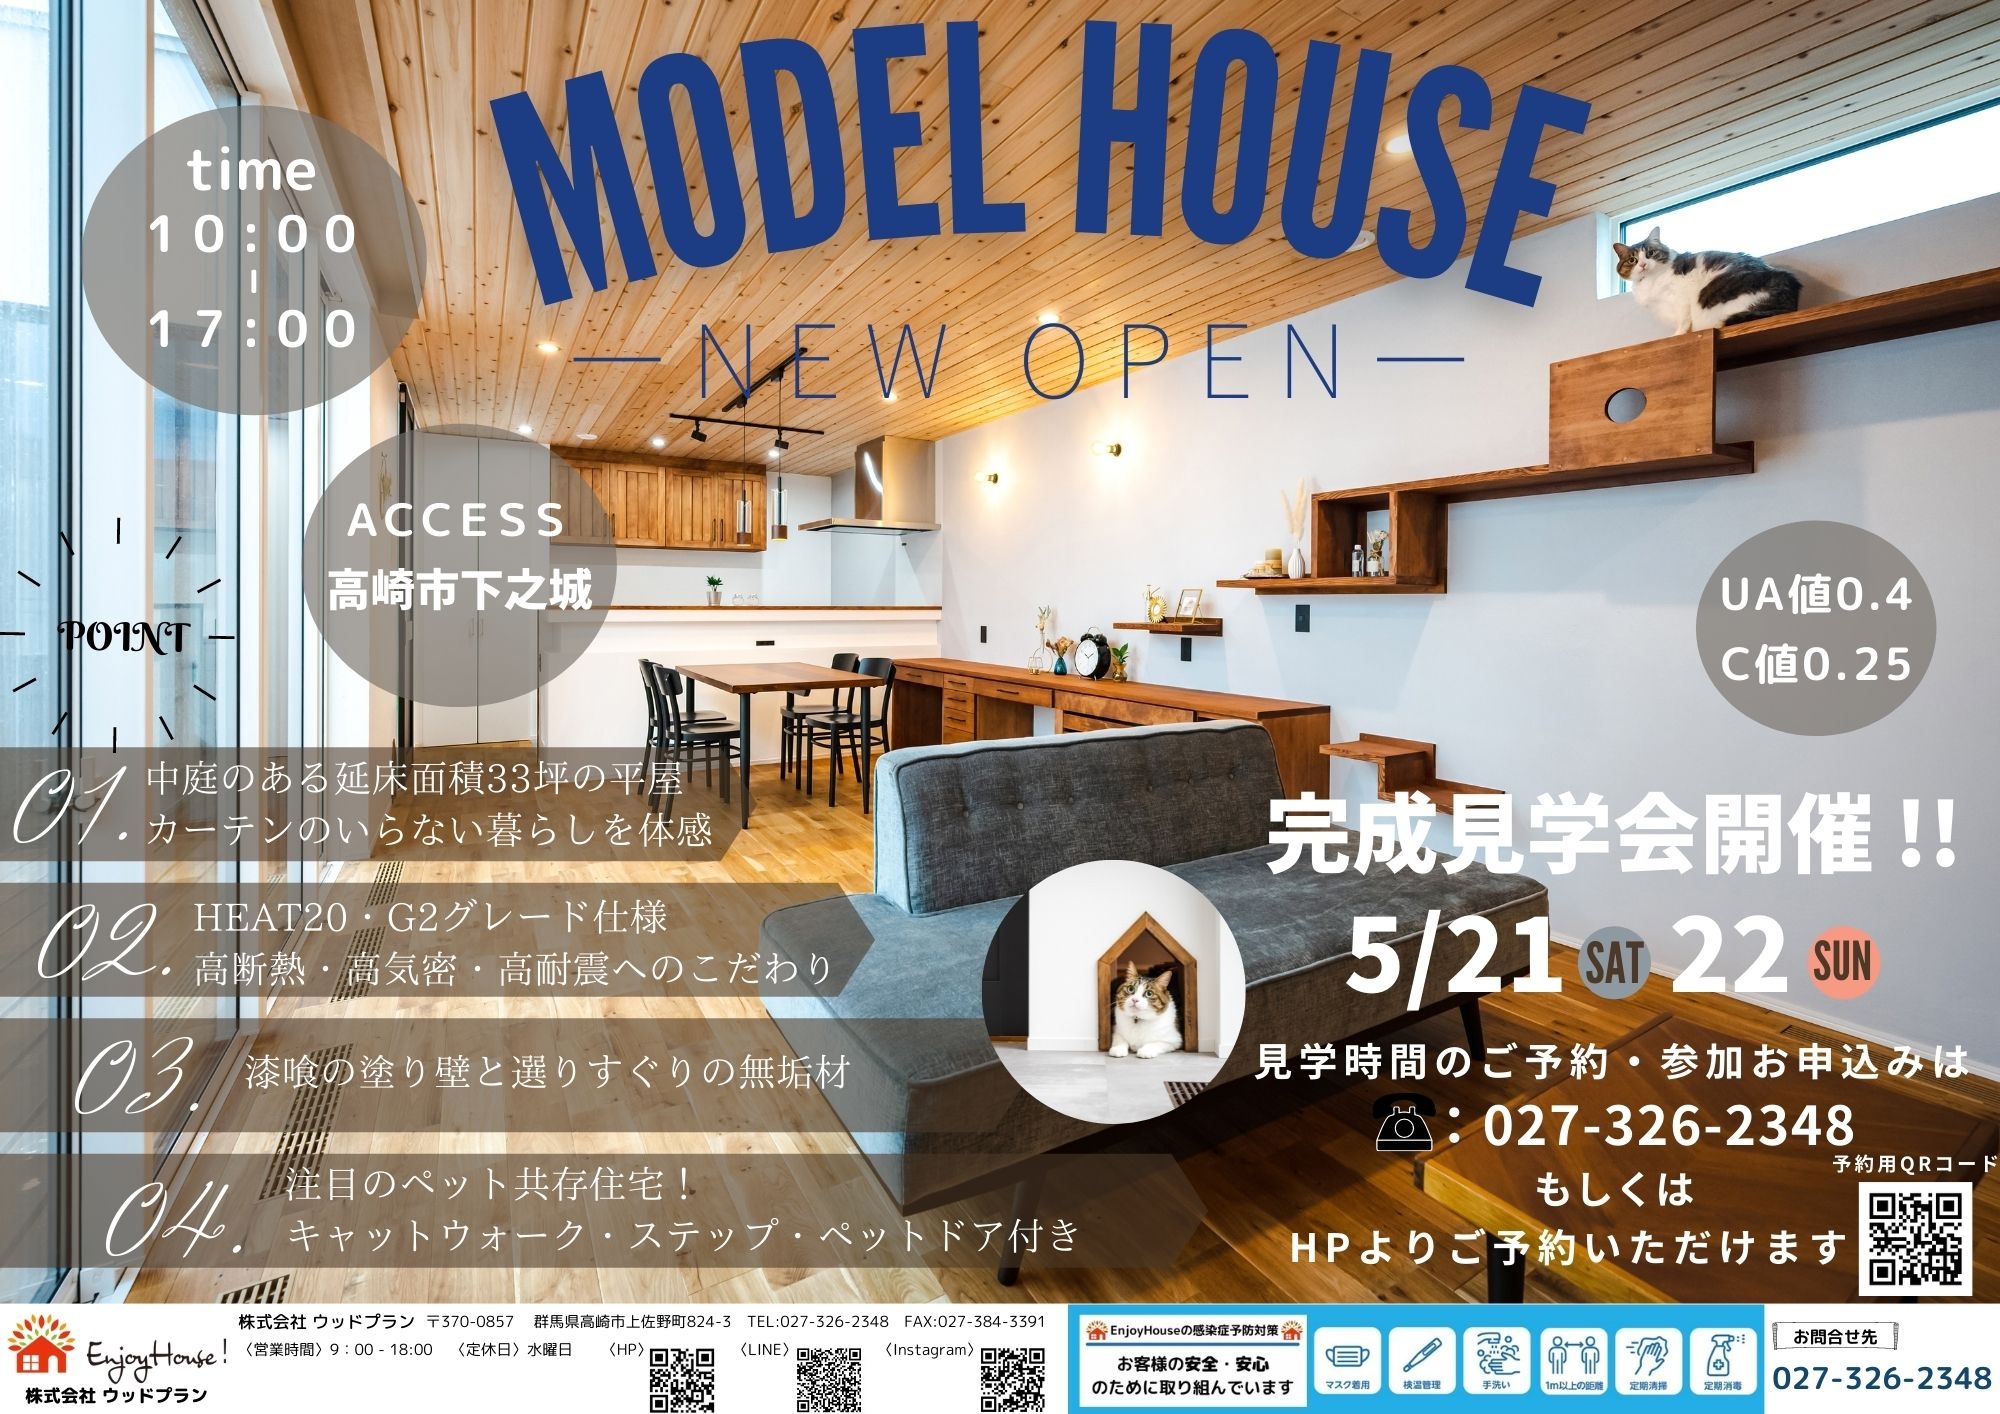 モデルハウスA4サイズ5月21日22日見学会チラシ.jpg